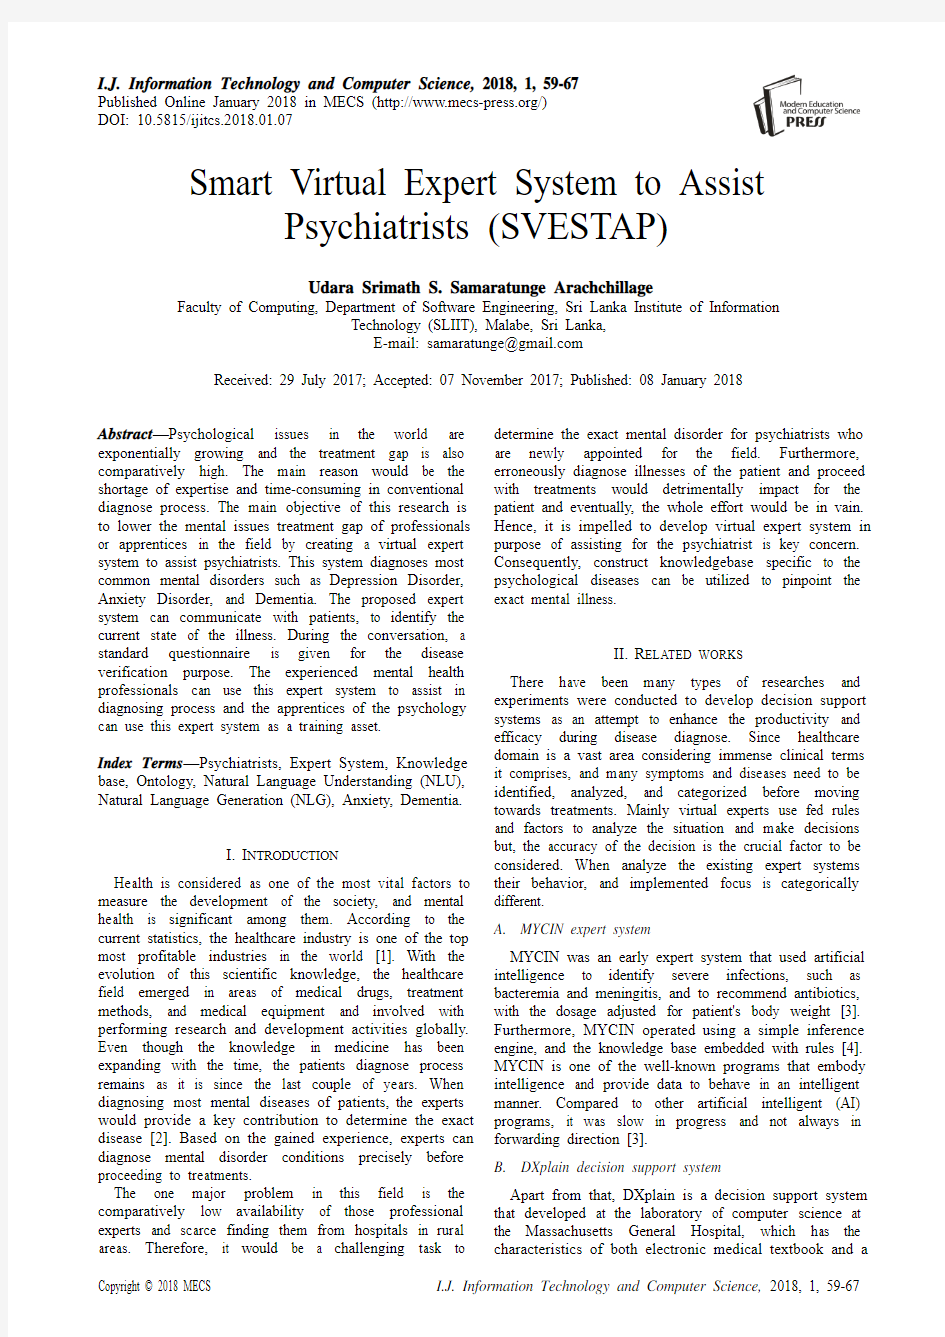 辅助精神病专家(SVESTAP)的智能虚拟专家系统(IJITCS-V10-N1-7)